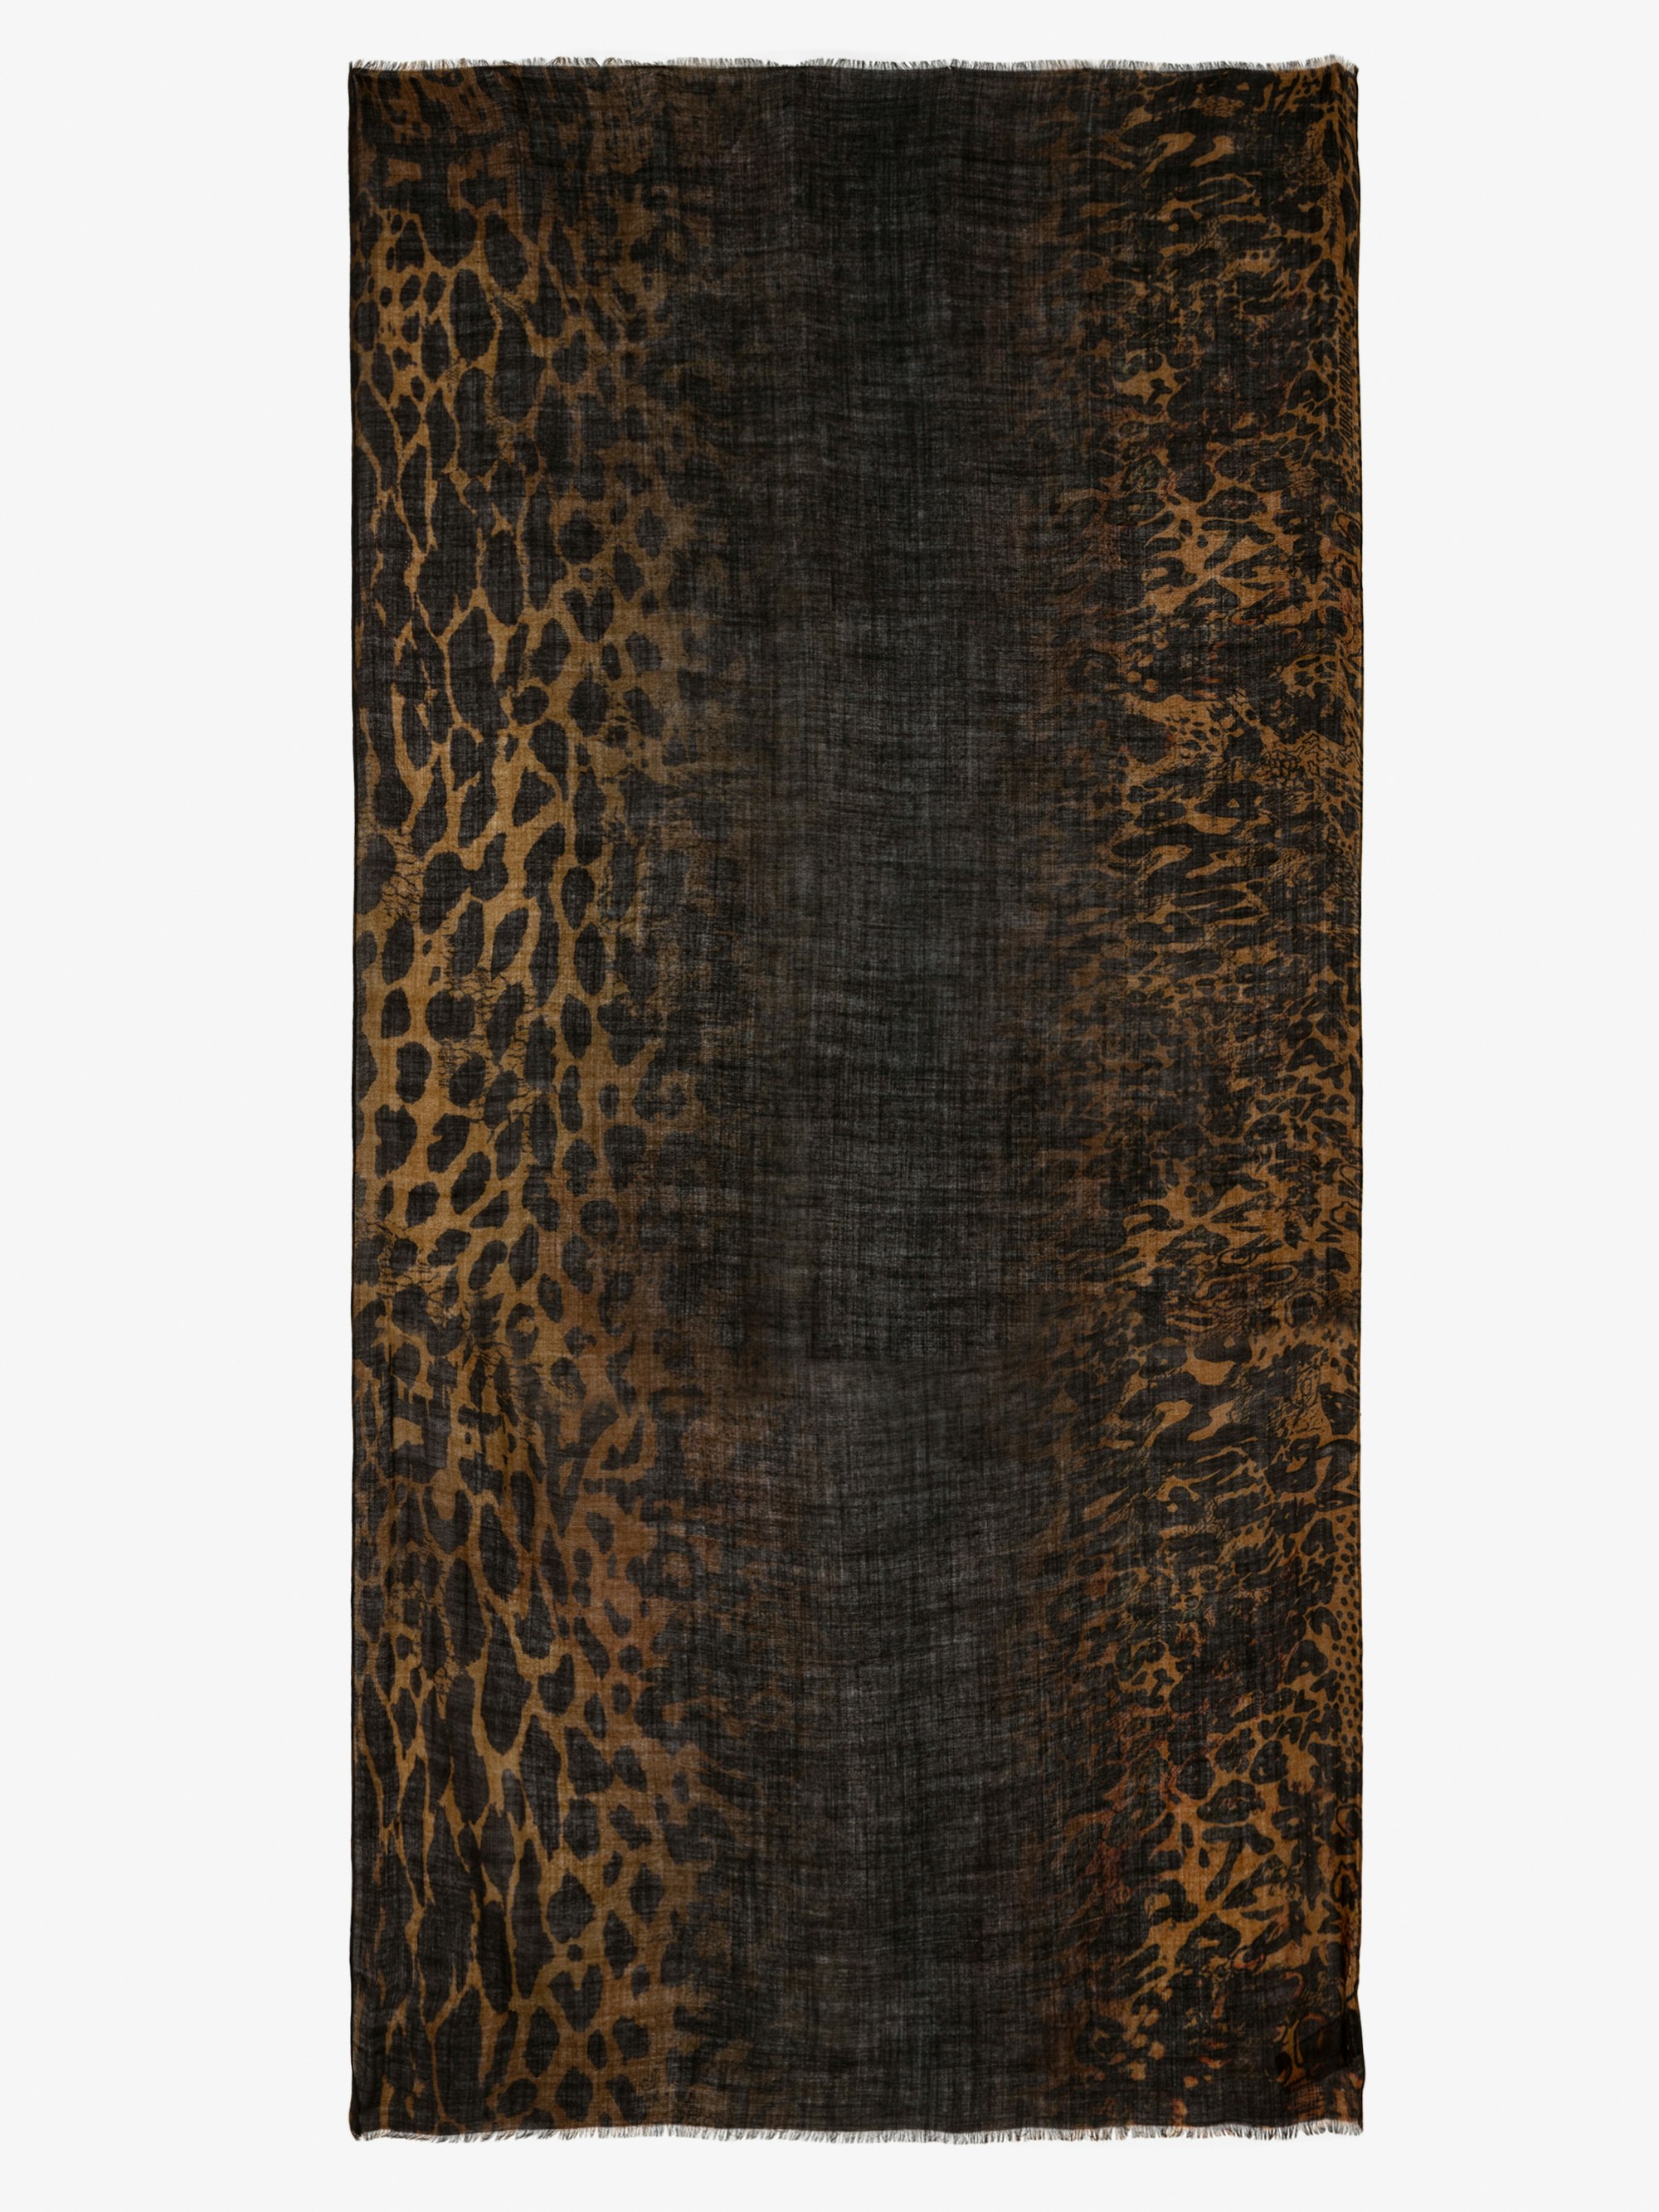 Halstuch Judy - Braunes Wolltuch mit Leopardenprint in Batikoptik.